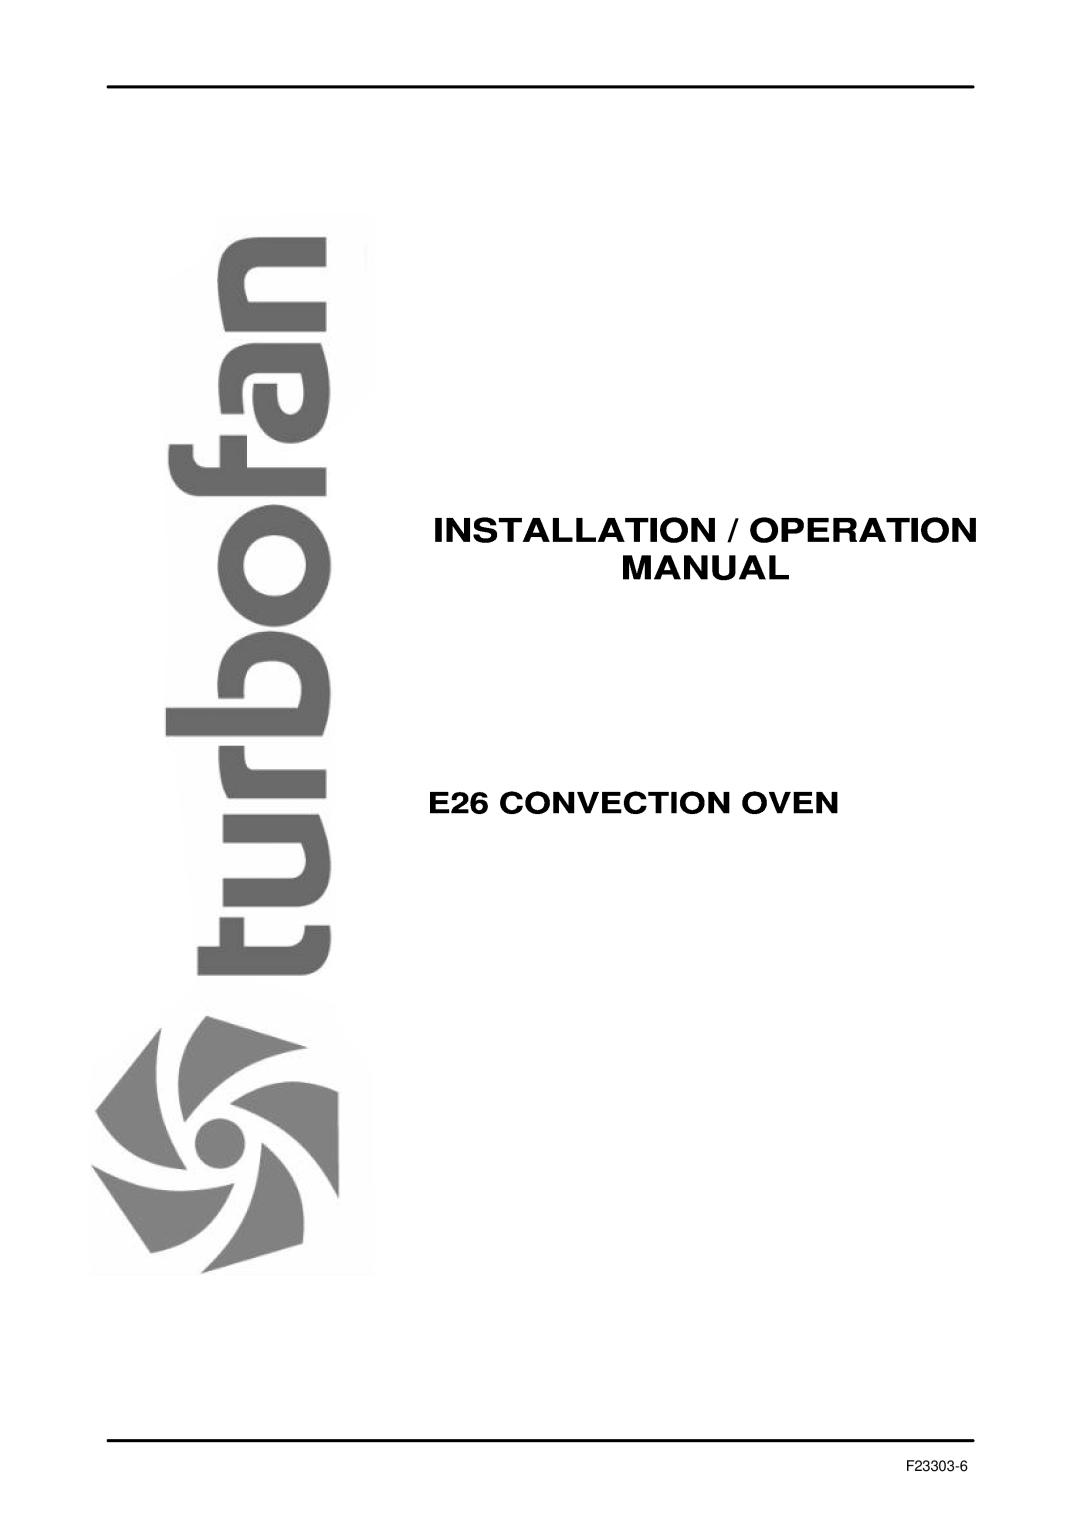 Moffat operation manual E26 CONVECTION OVEN, F23303-6 